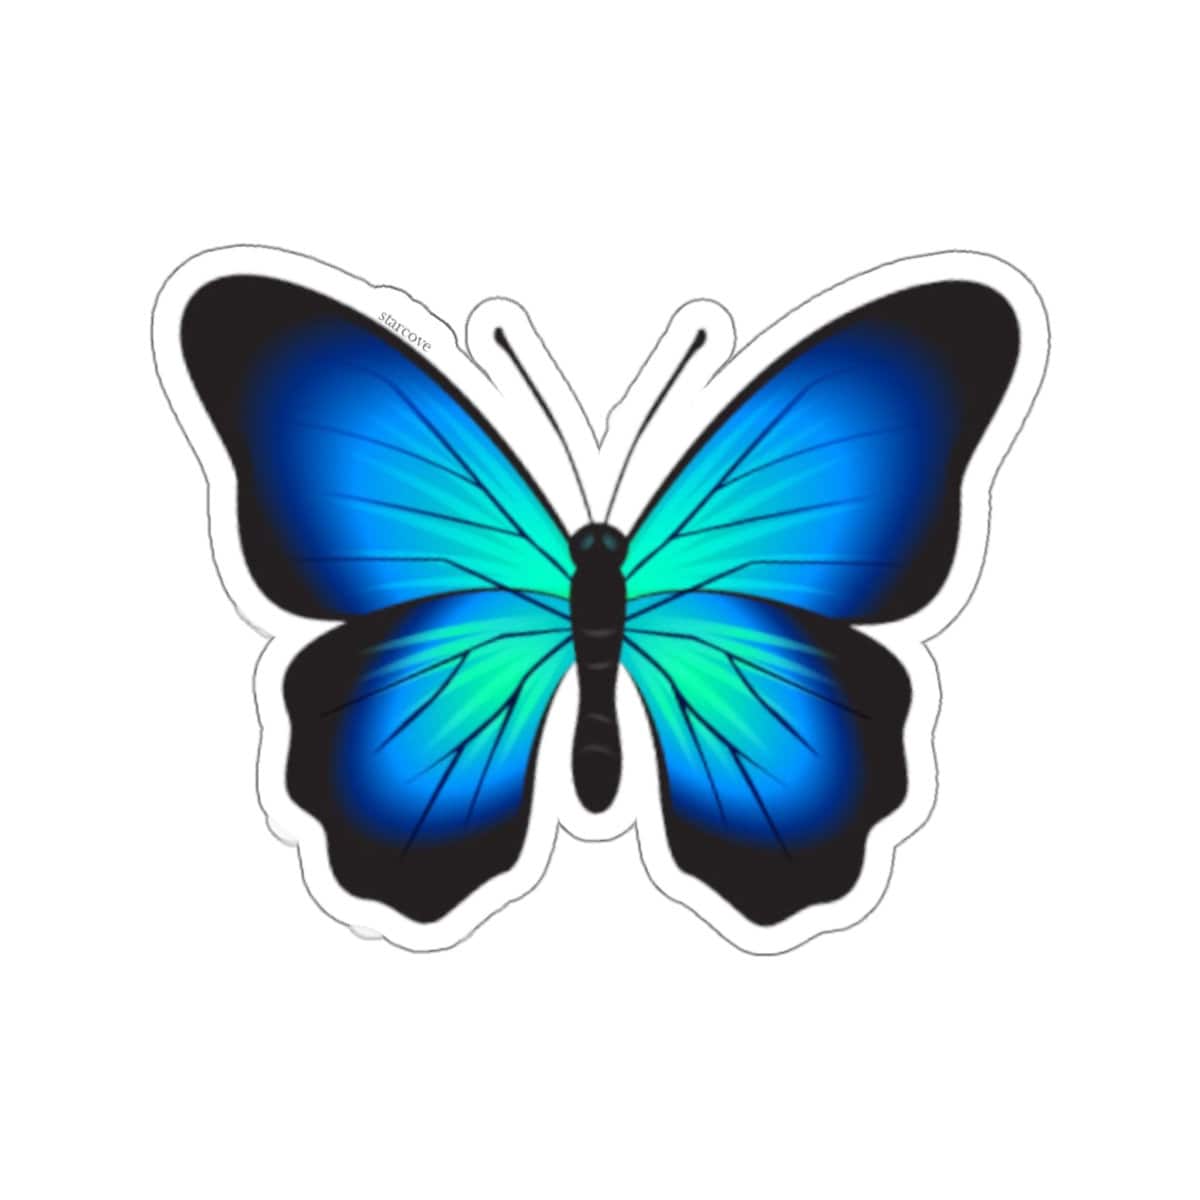 Sticker / Aufkleber Schmetterling, für Auto / Motorrad / Laptop /  Dekoration / Kühlschrank, Blau-Schwarz, 4-teiliges Set